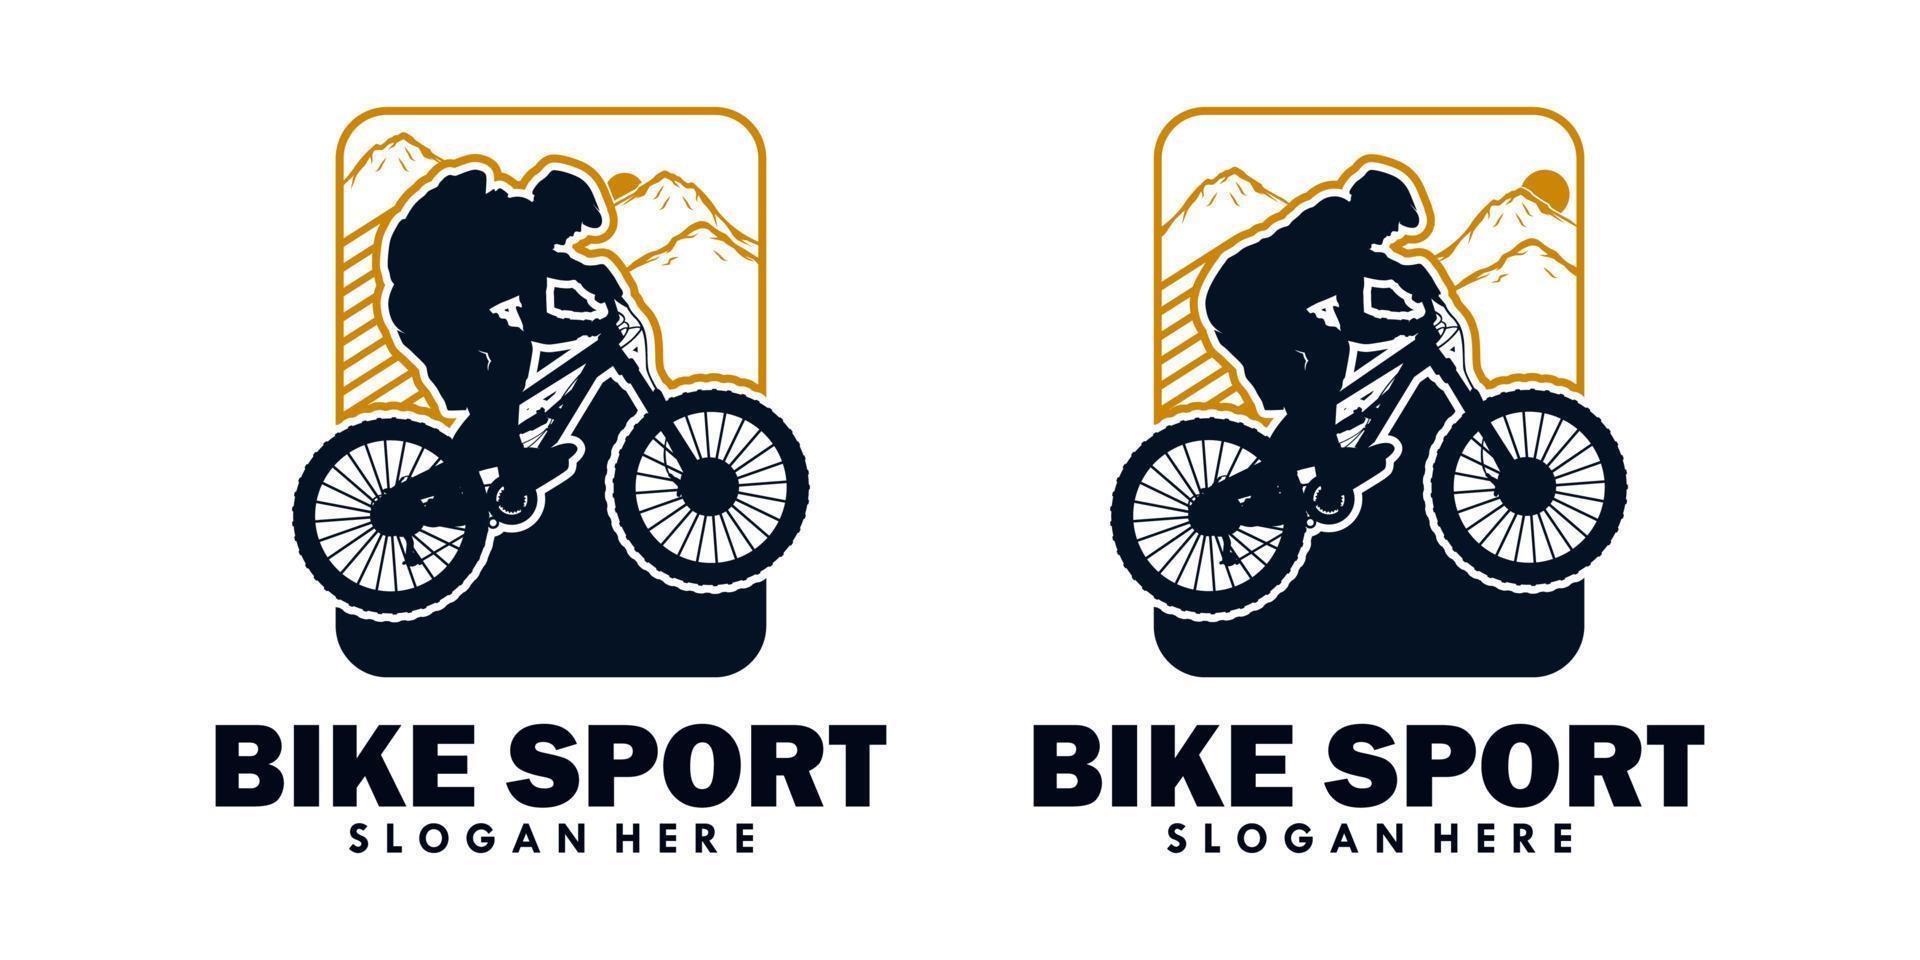 bike sport logo illustration isolated in white background vector